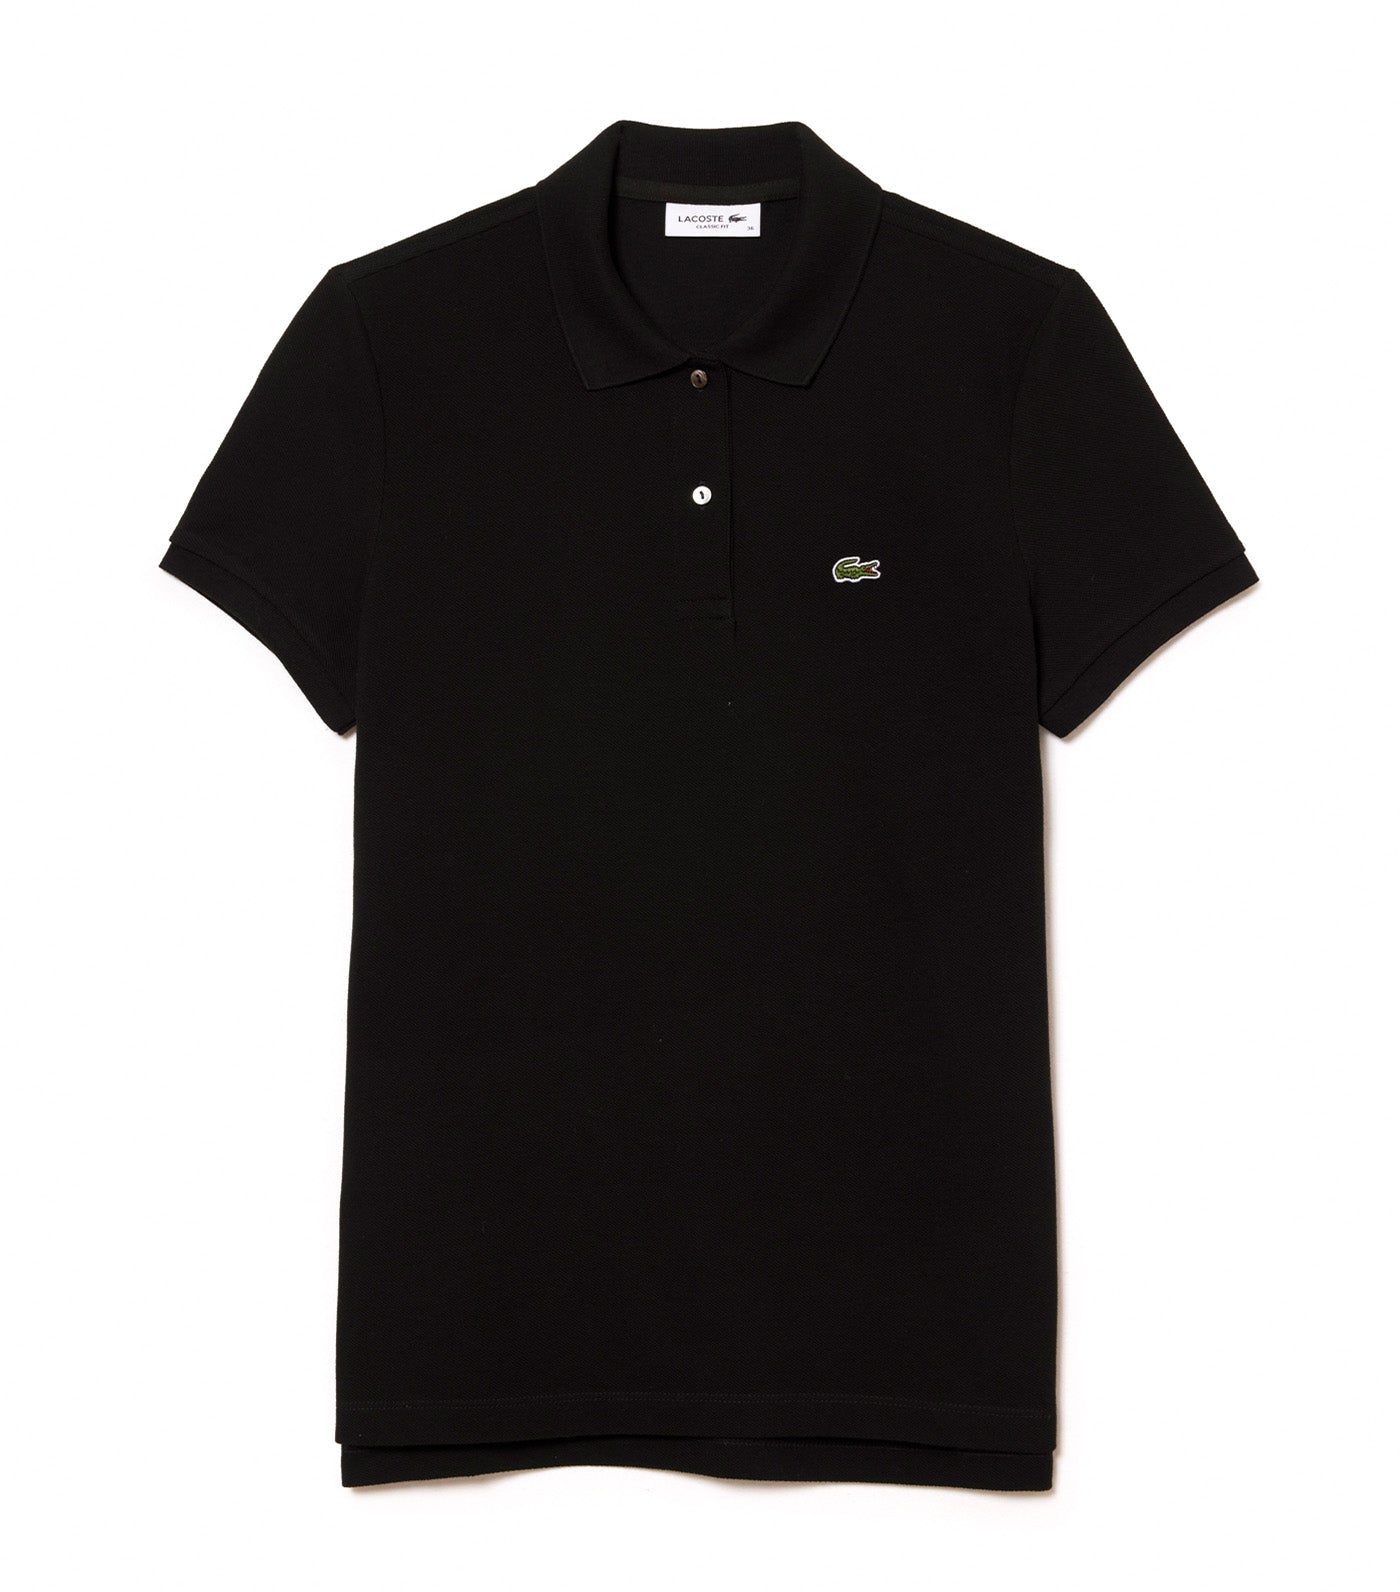 Women's Lacoste Classic Fit Soft Cotton Petit Piqué Polo Shirt Black